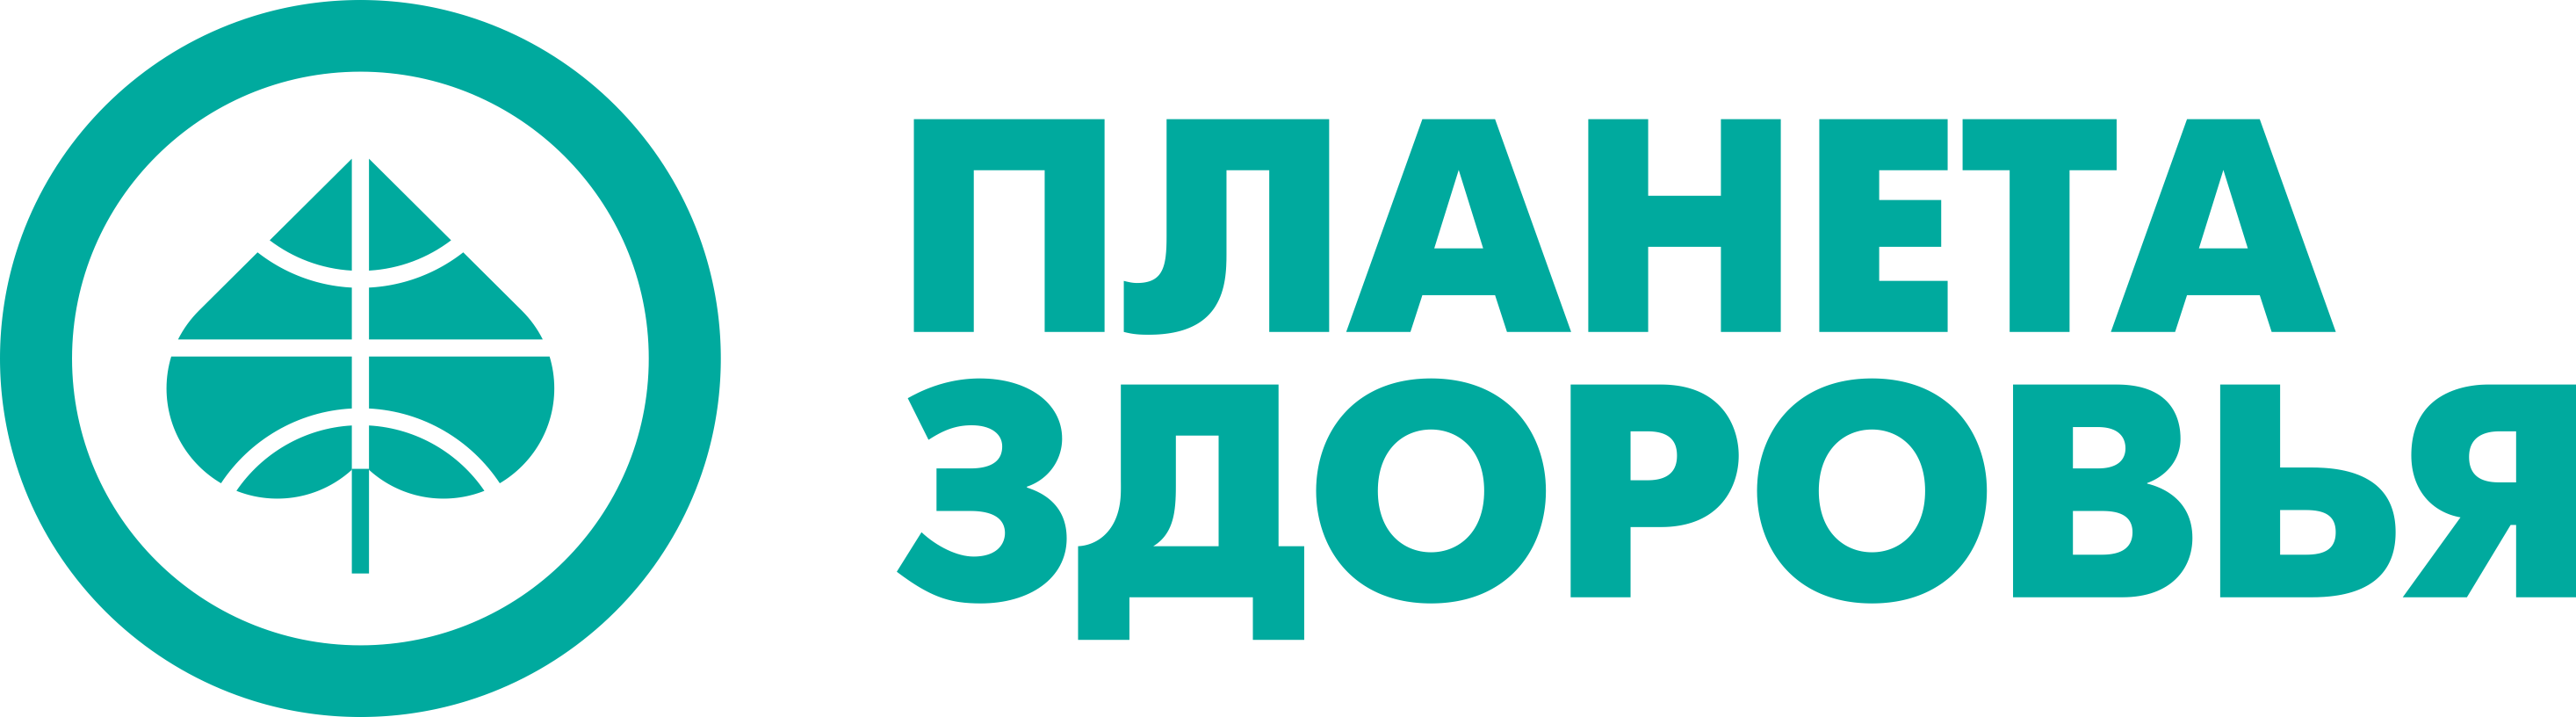 Логотип опека